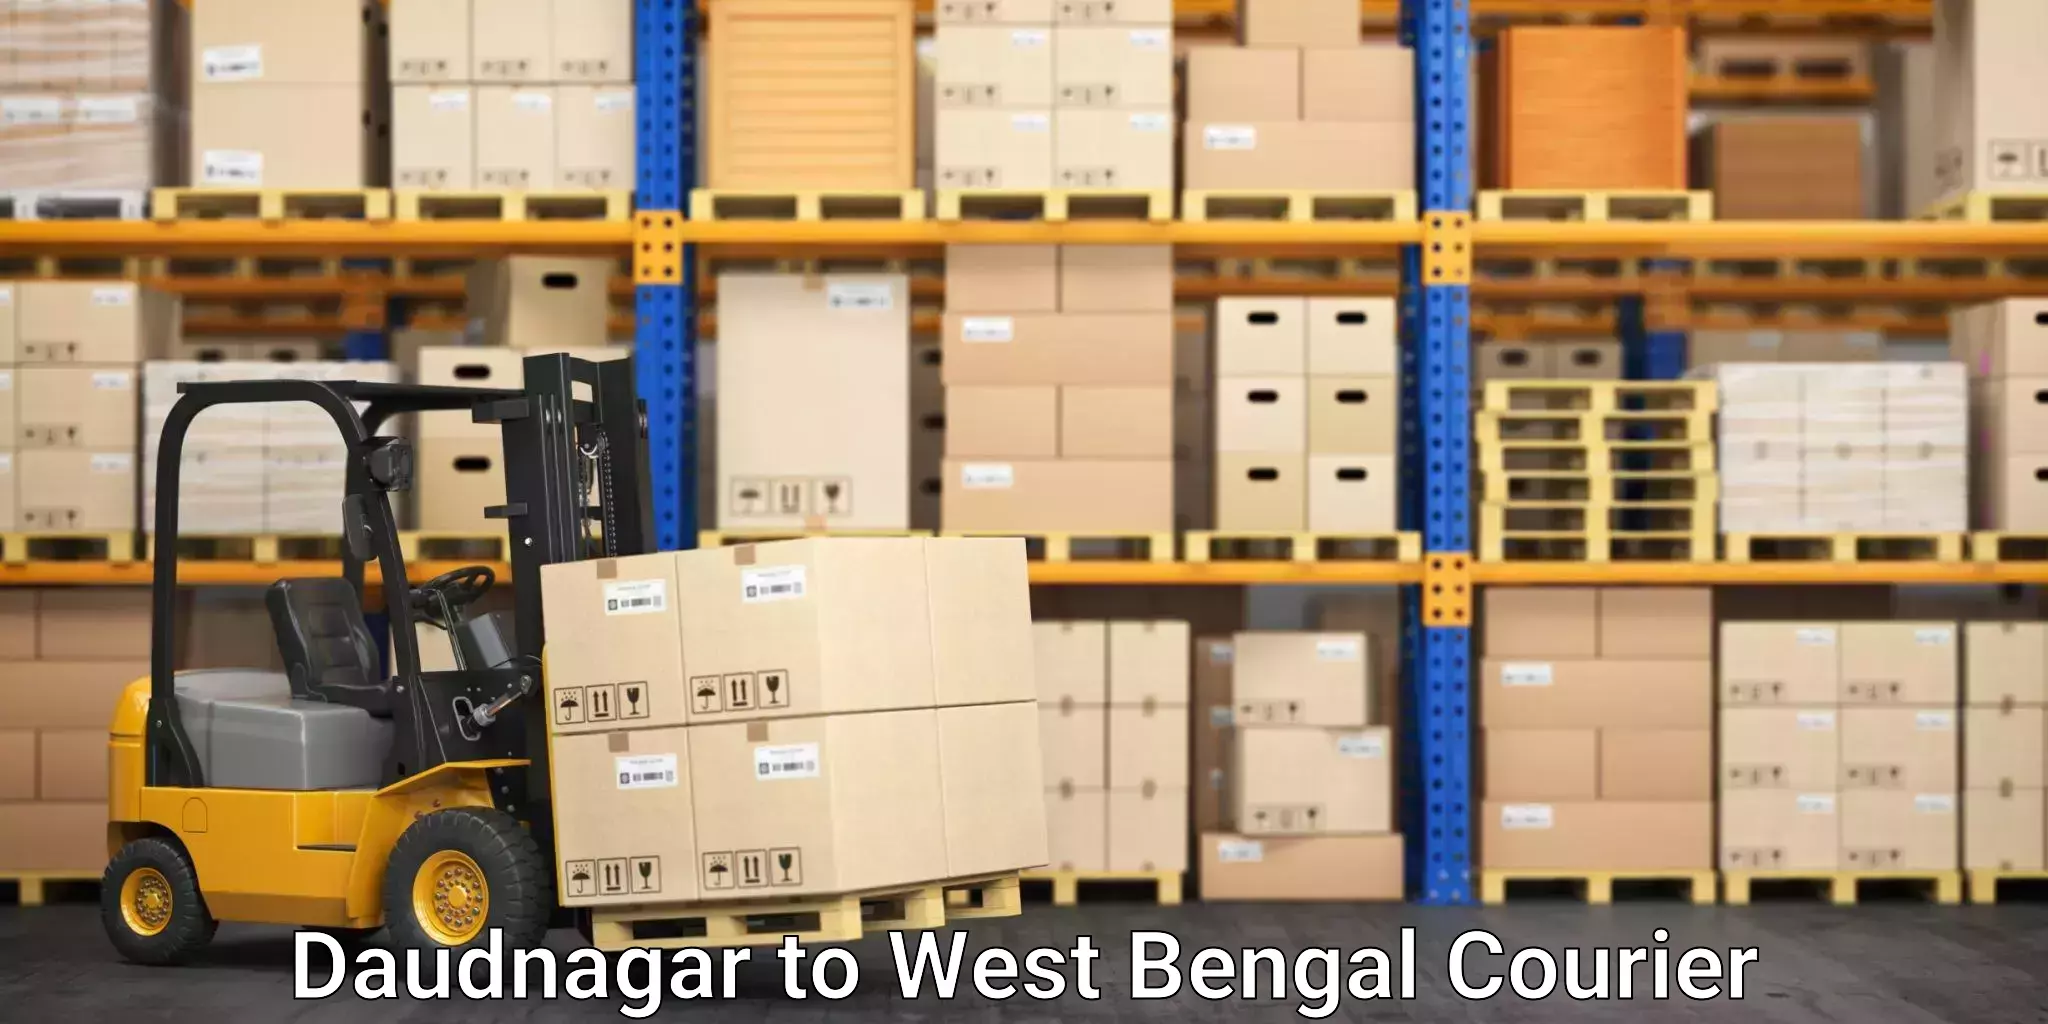 Moving and handling services Daudnagar to Lalgola